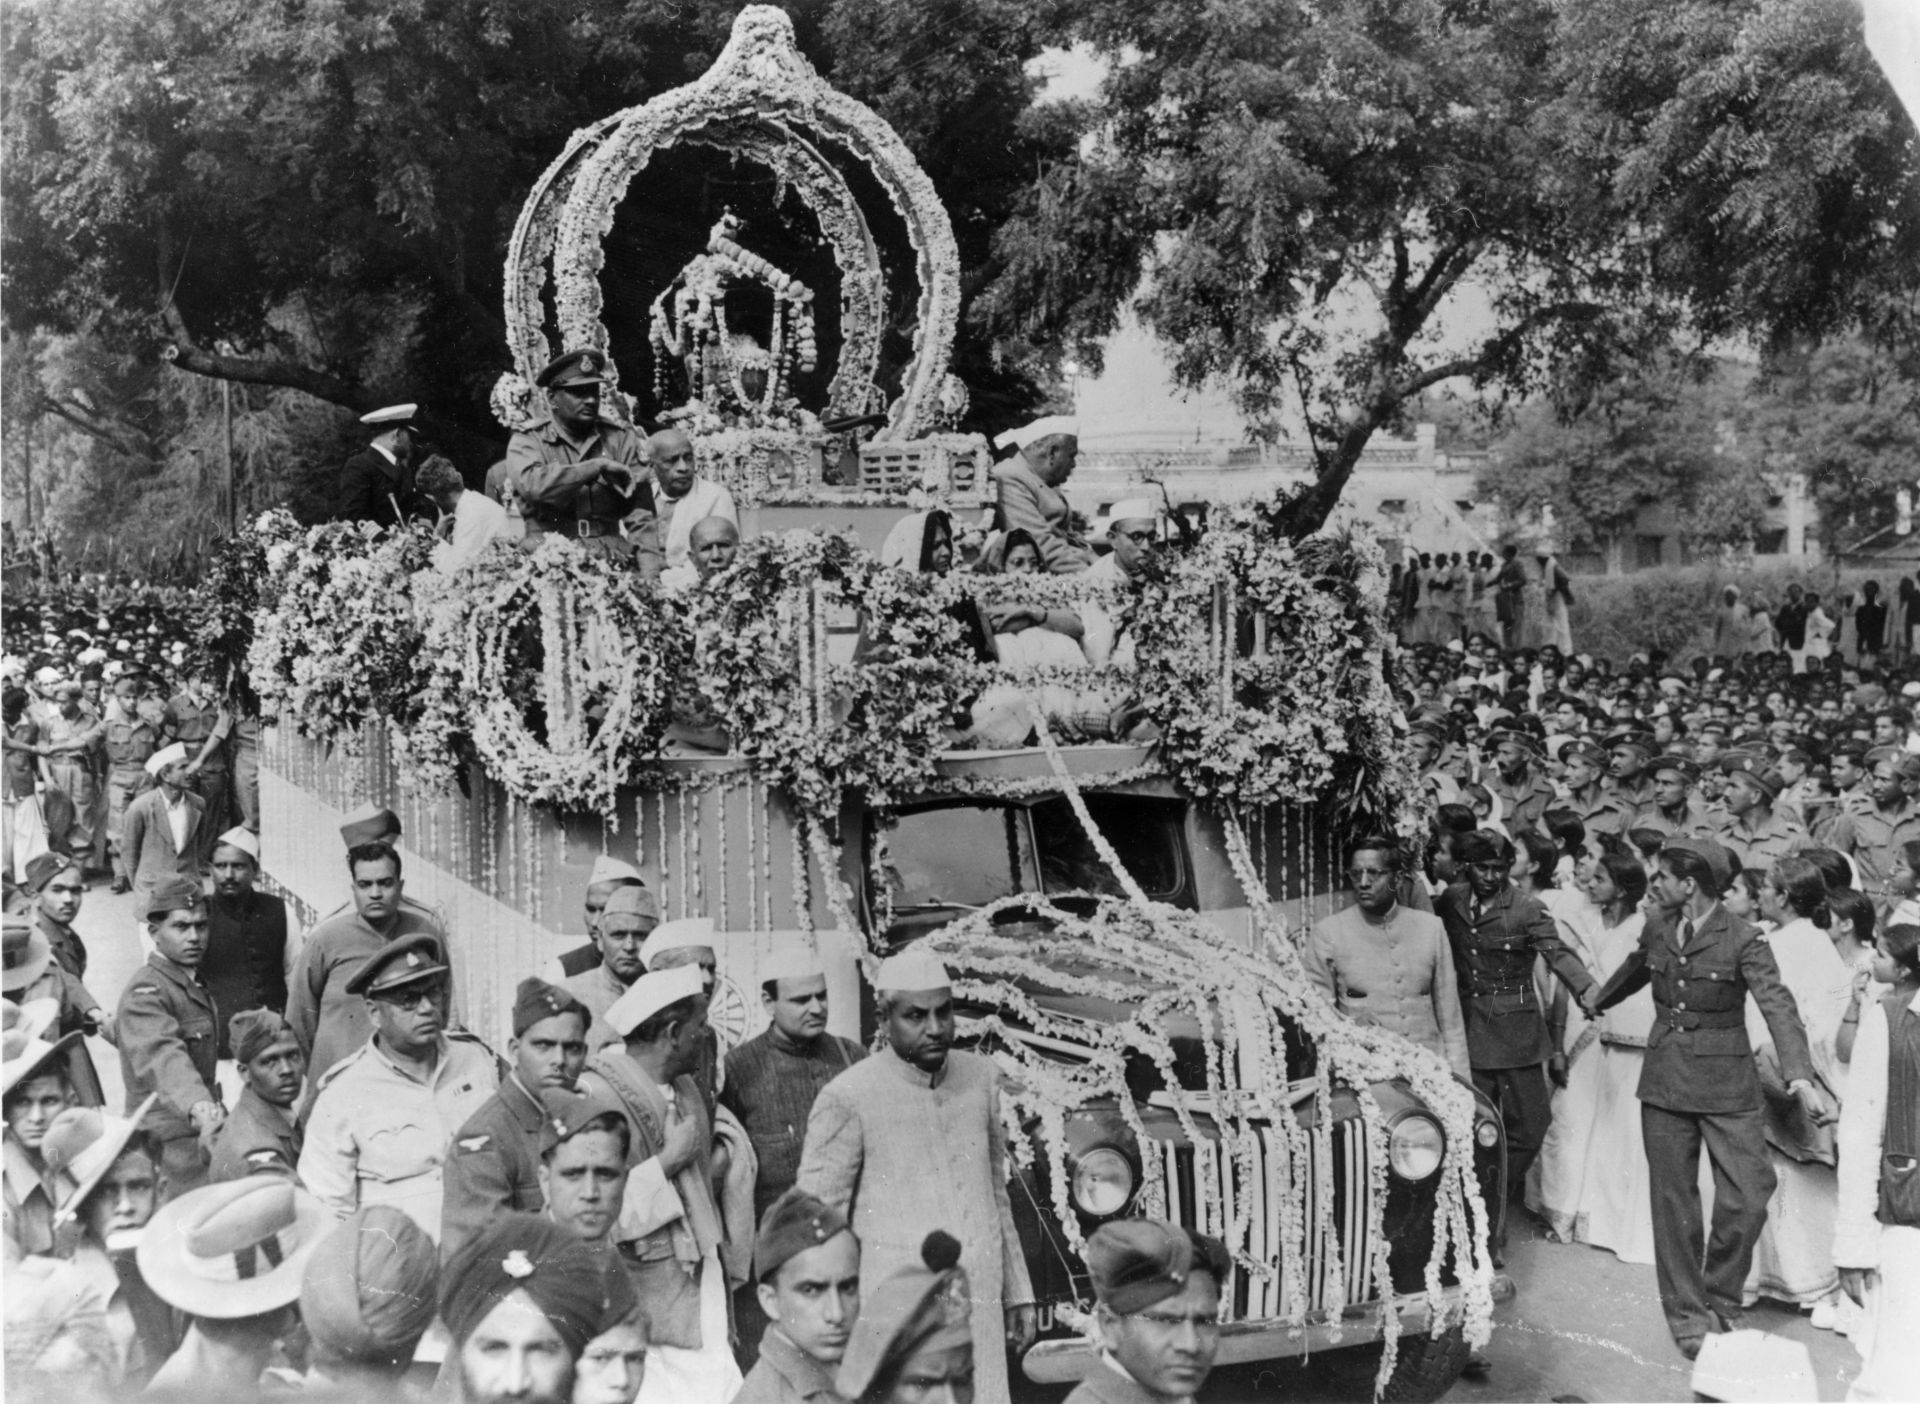 17 февруари 1948 г.: Пепелта на убития индийски националистически лидер Махатма Ганди (1869 - 1948) се пренася по улиците на Аллахабад, преди да бъде изпратен до река Ганг